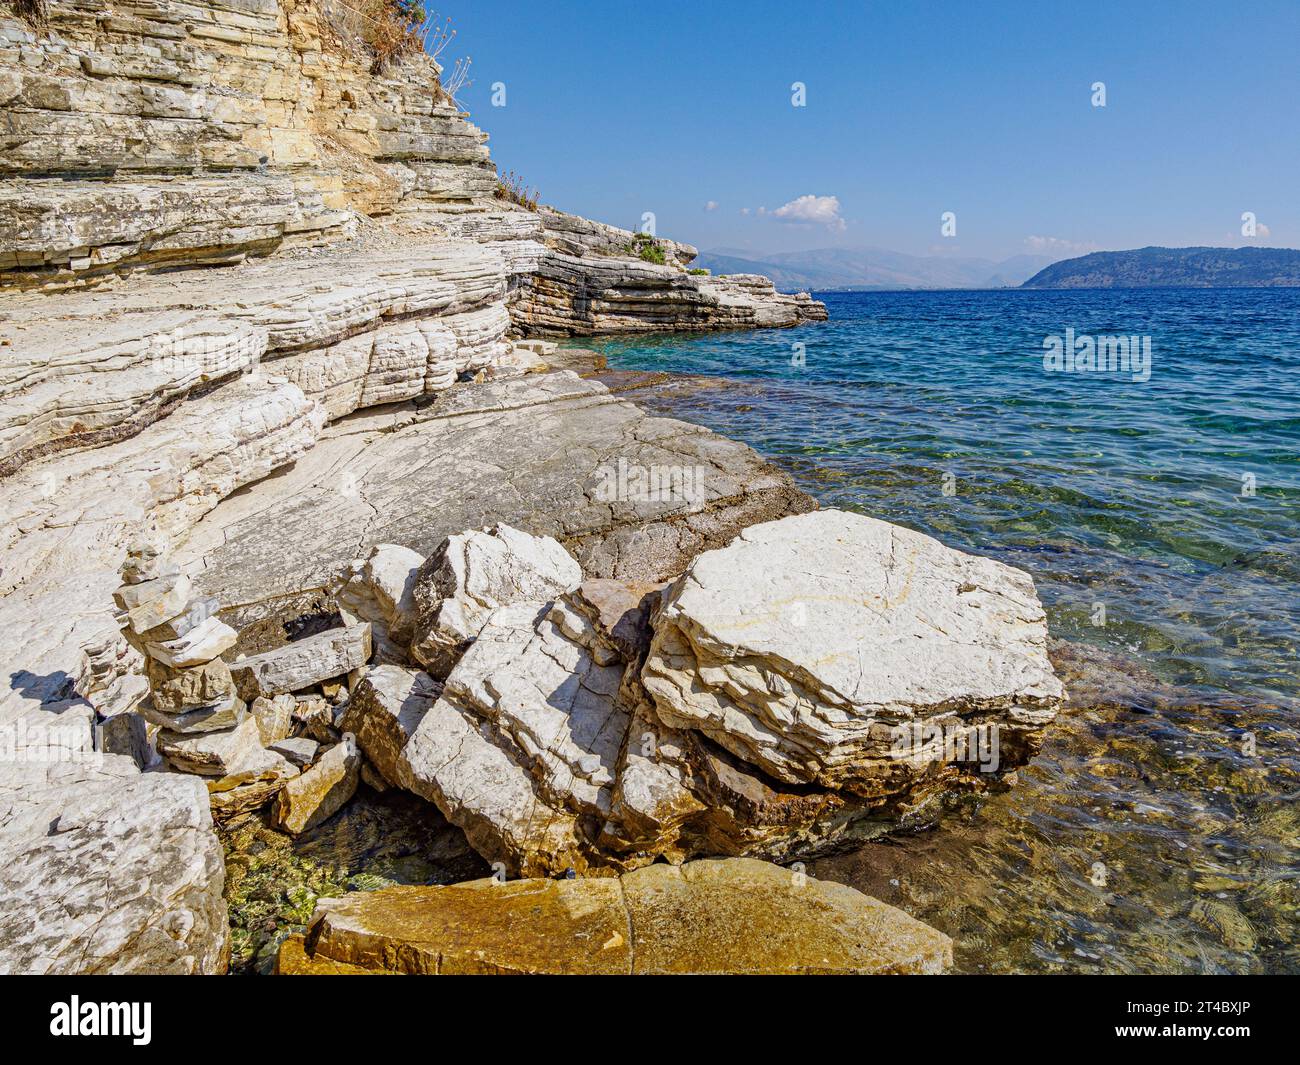 Promontorio roccioso di pietra calcarea sulla costa nord-orientale di Corfù, nelle isole greche ioniche Foto Stock